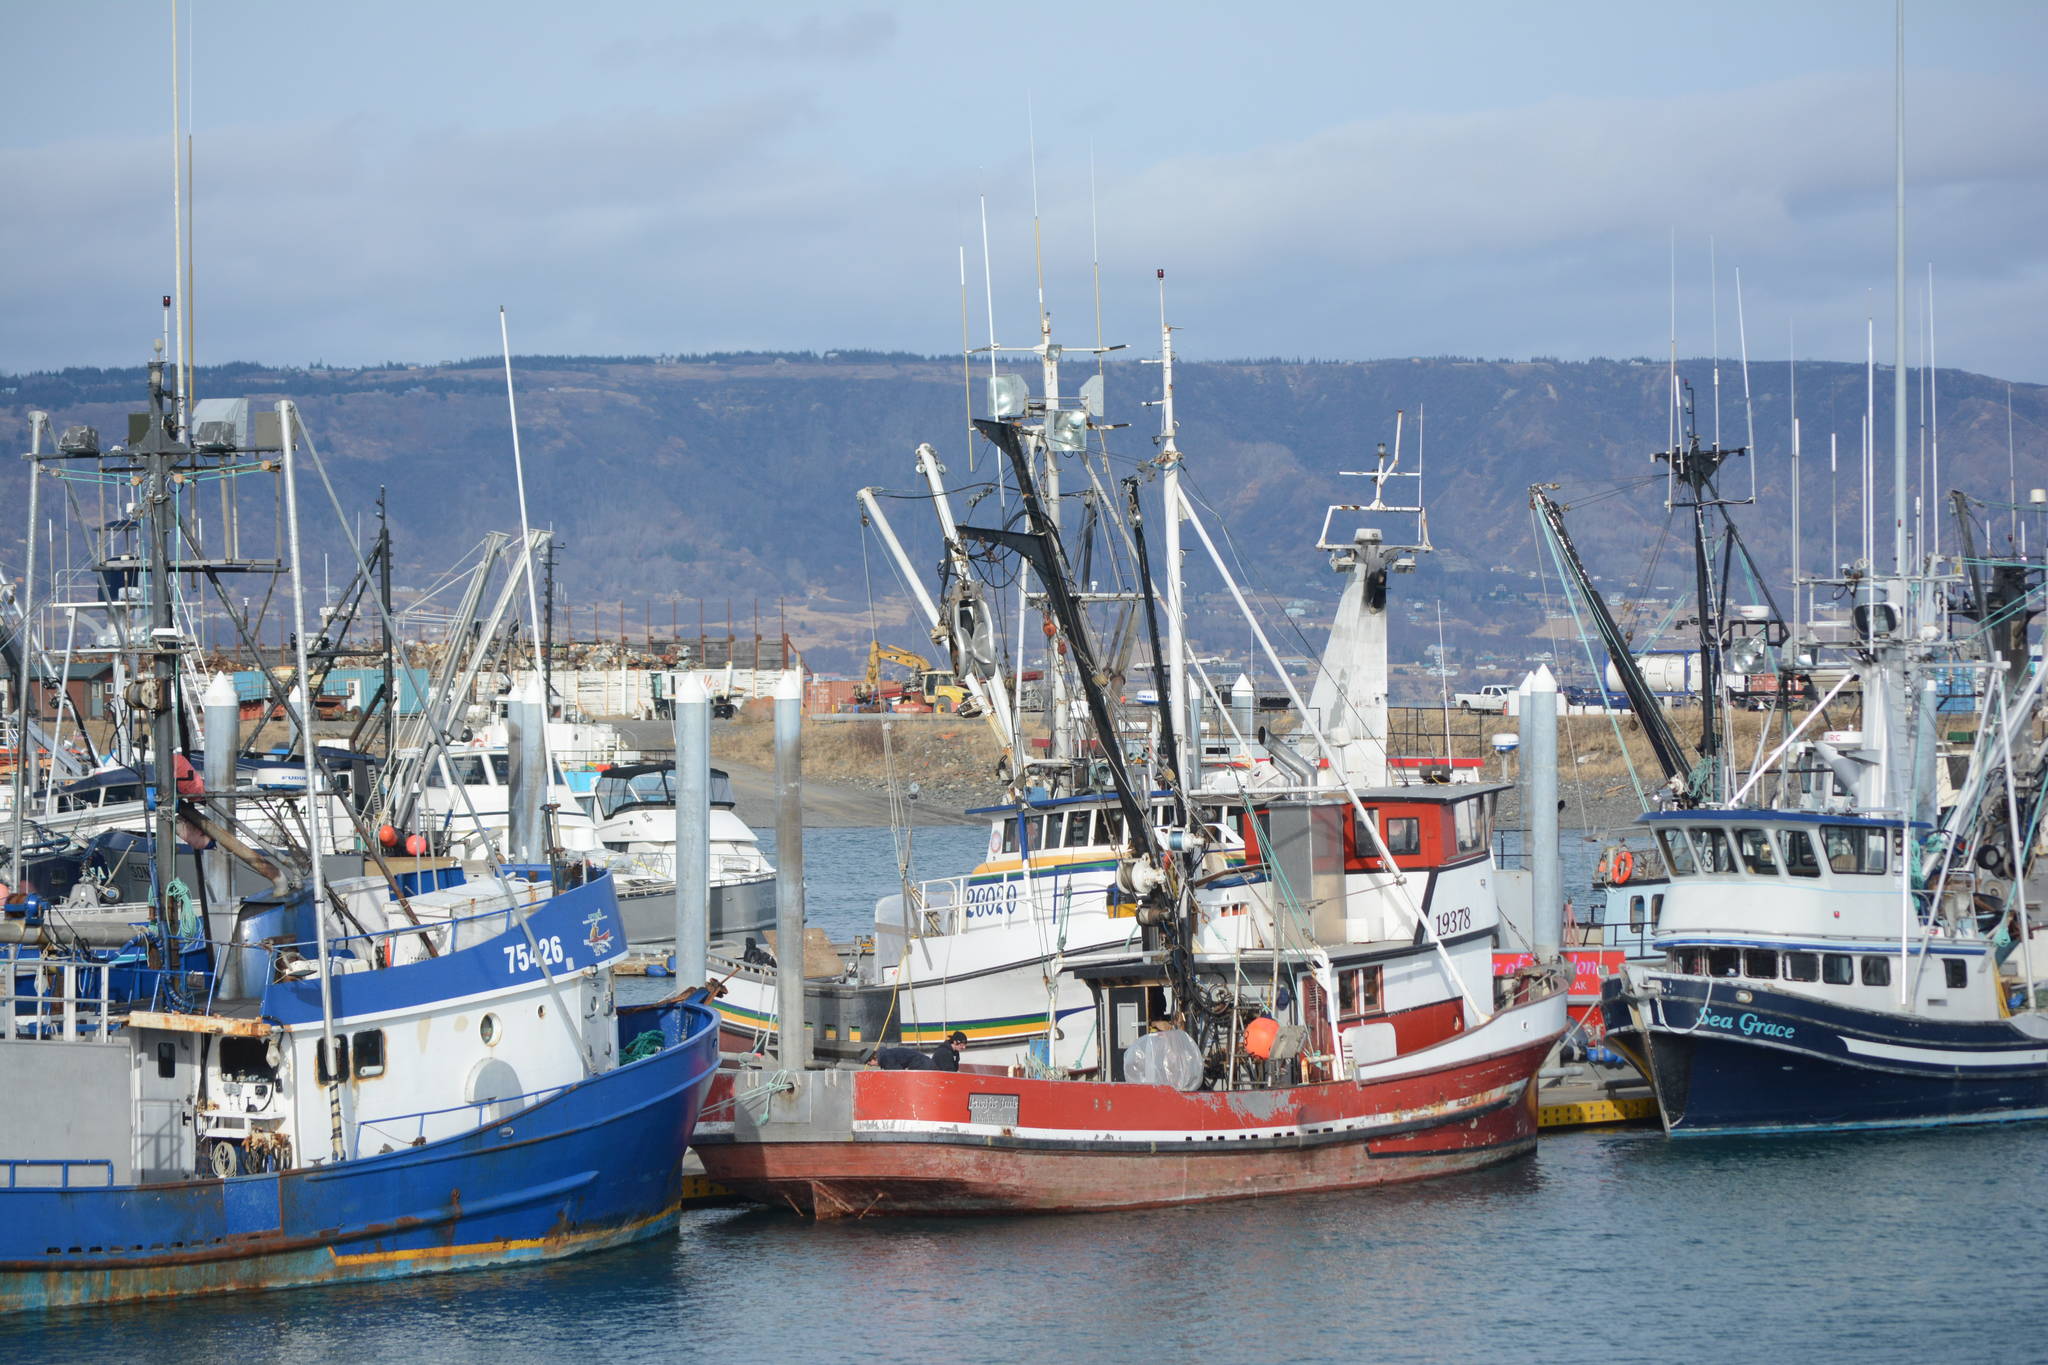 Seawatch: Most halibut quotas set lower